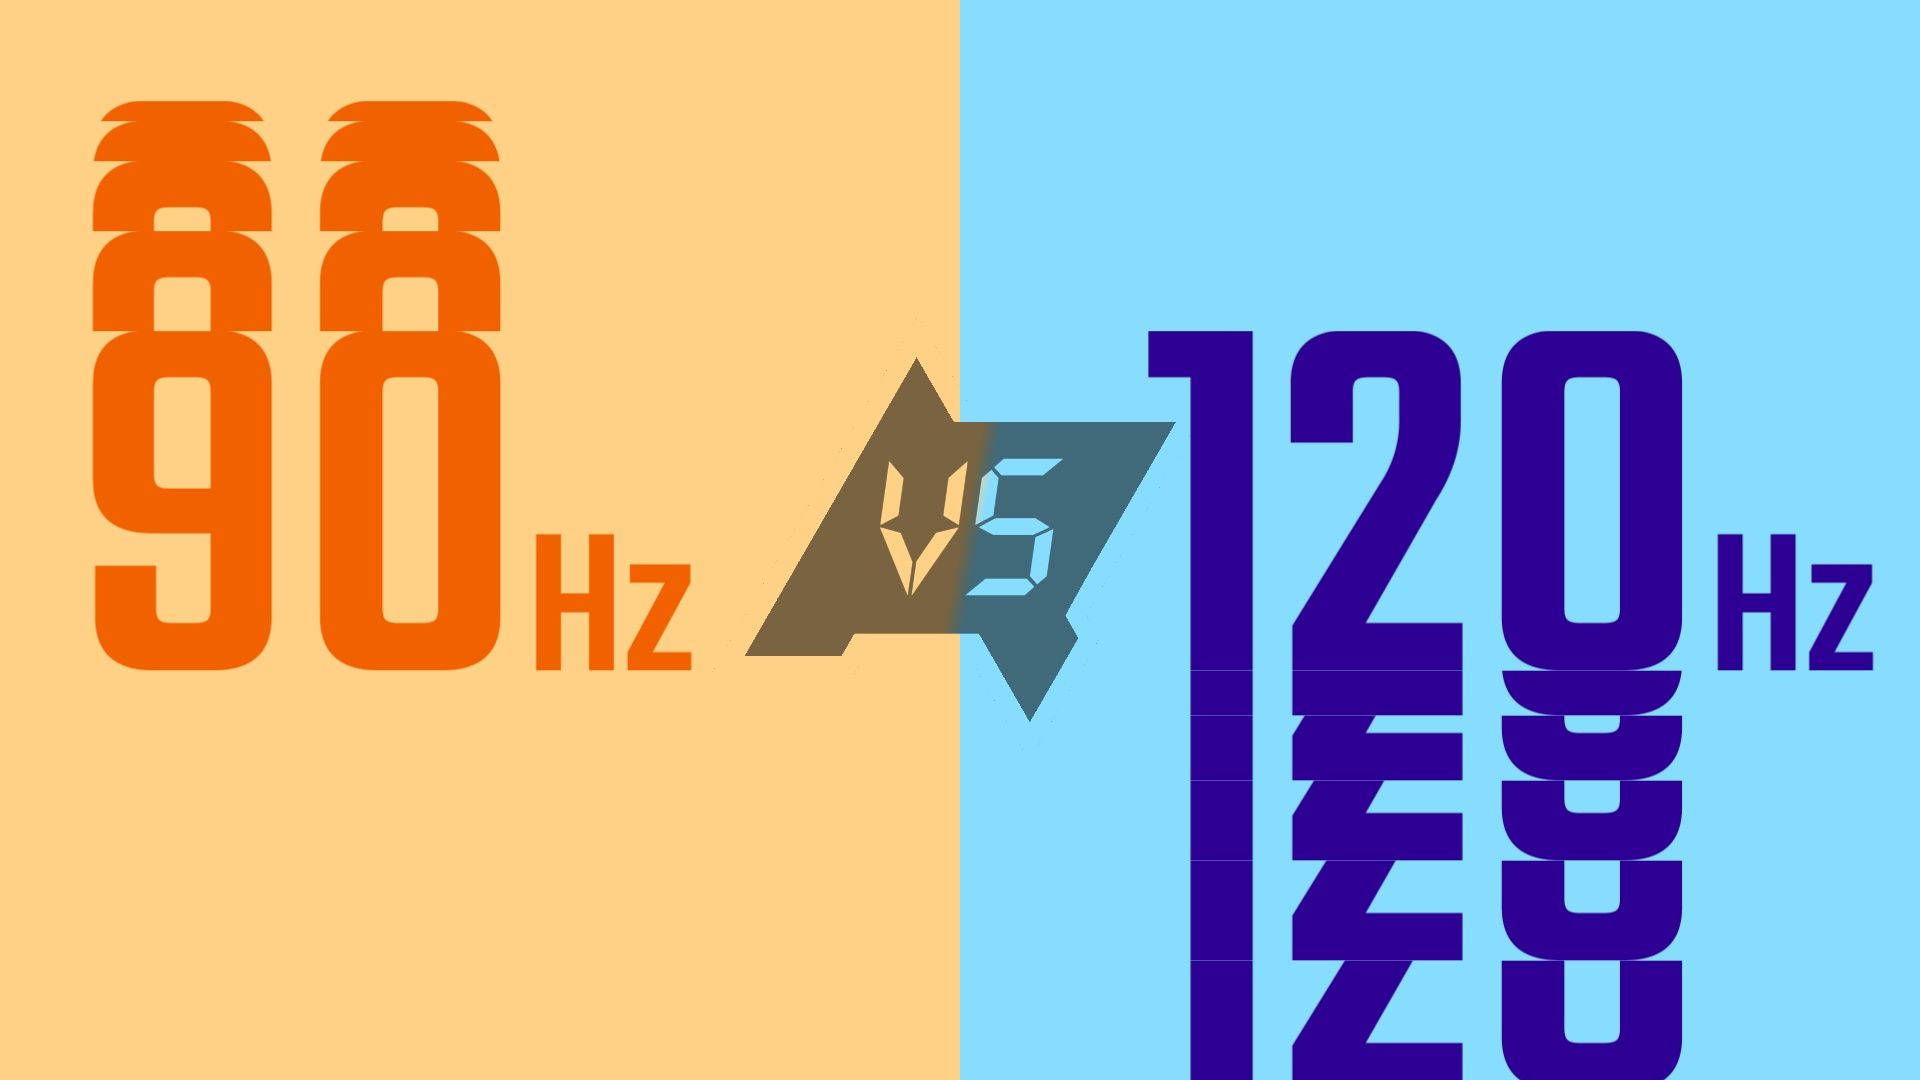 Taxa de atualização de 90 Hz vs. taxa de atualização de 120 Hz